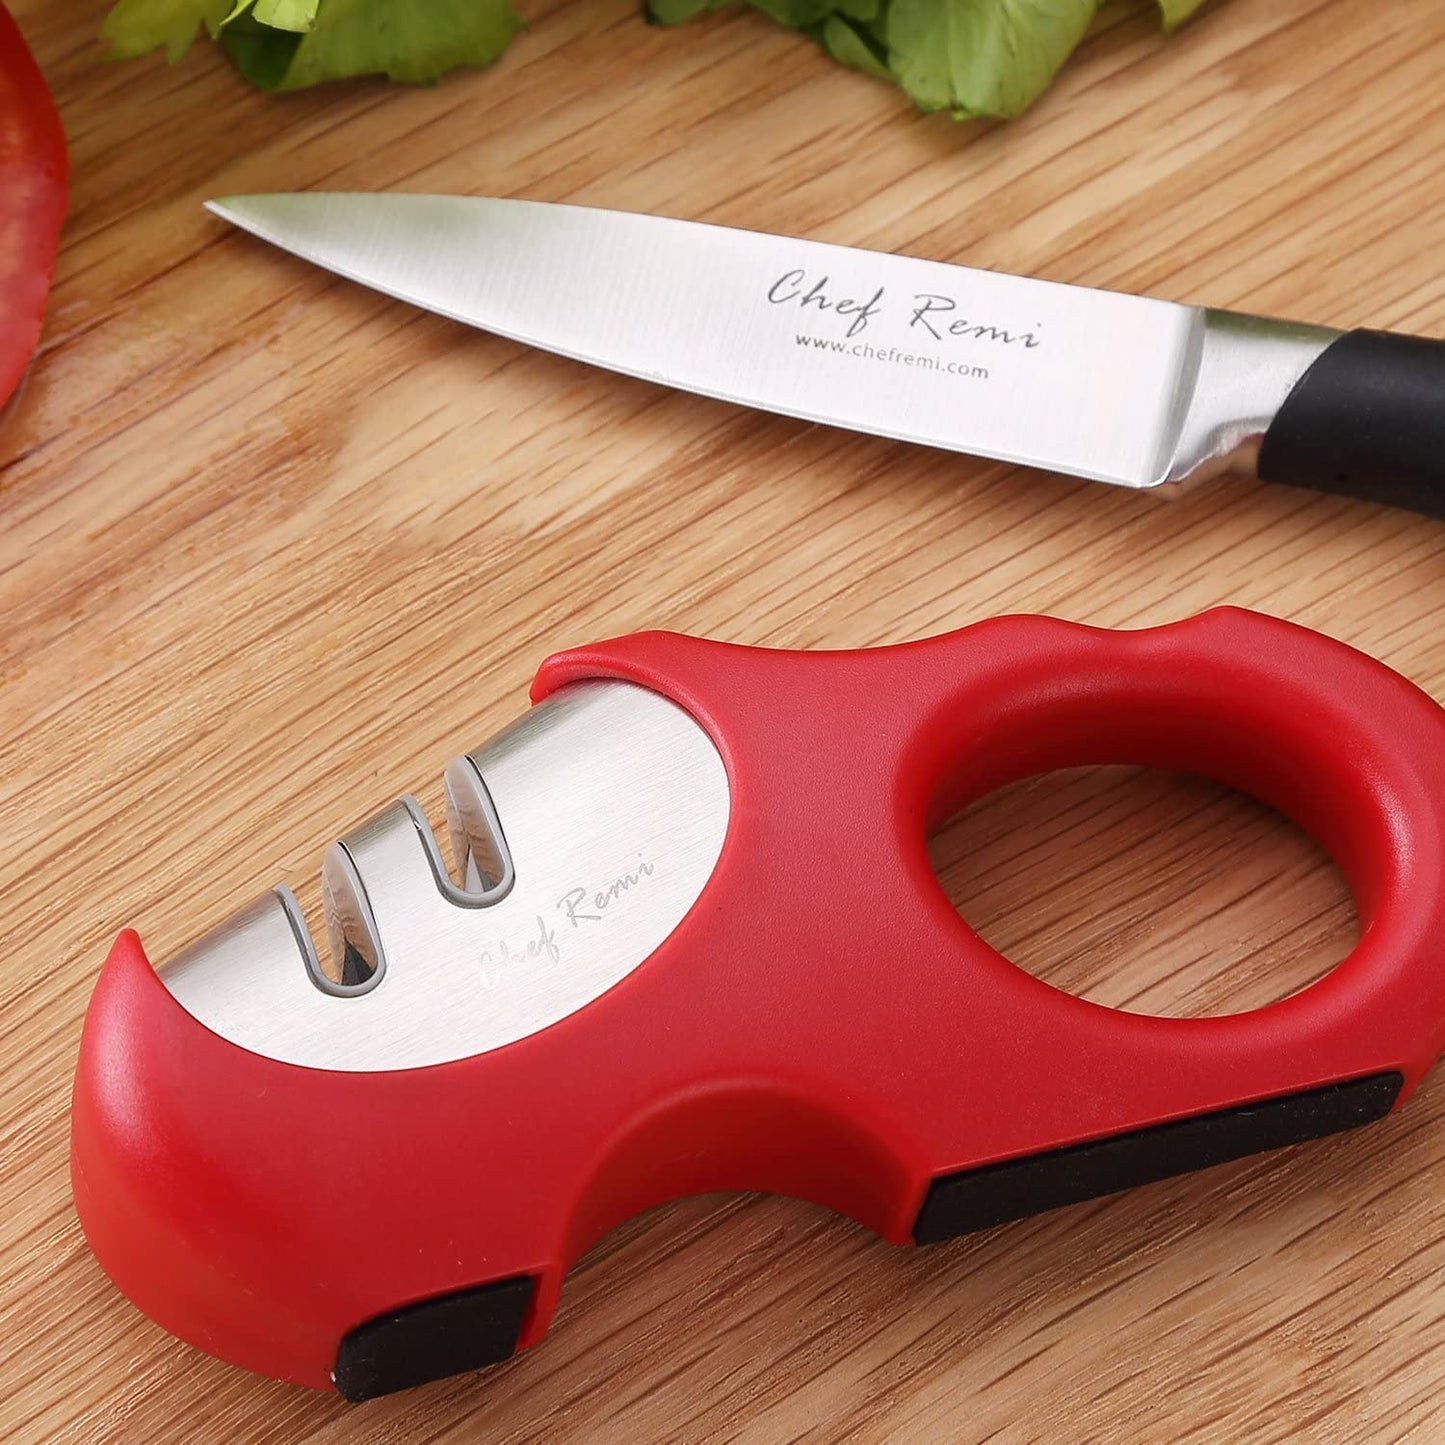 Chef Remi Knife Sharpener | Non-Slip Stainless Steel Scissors & Blade Sharpener